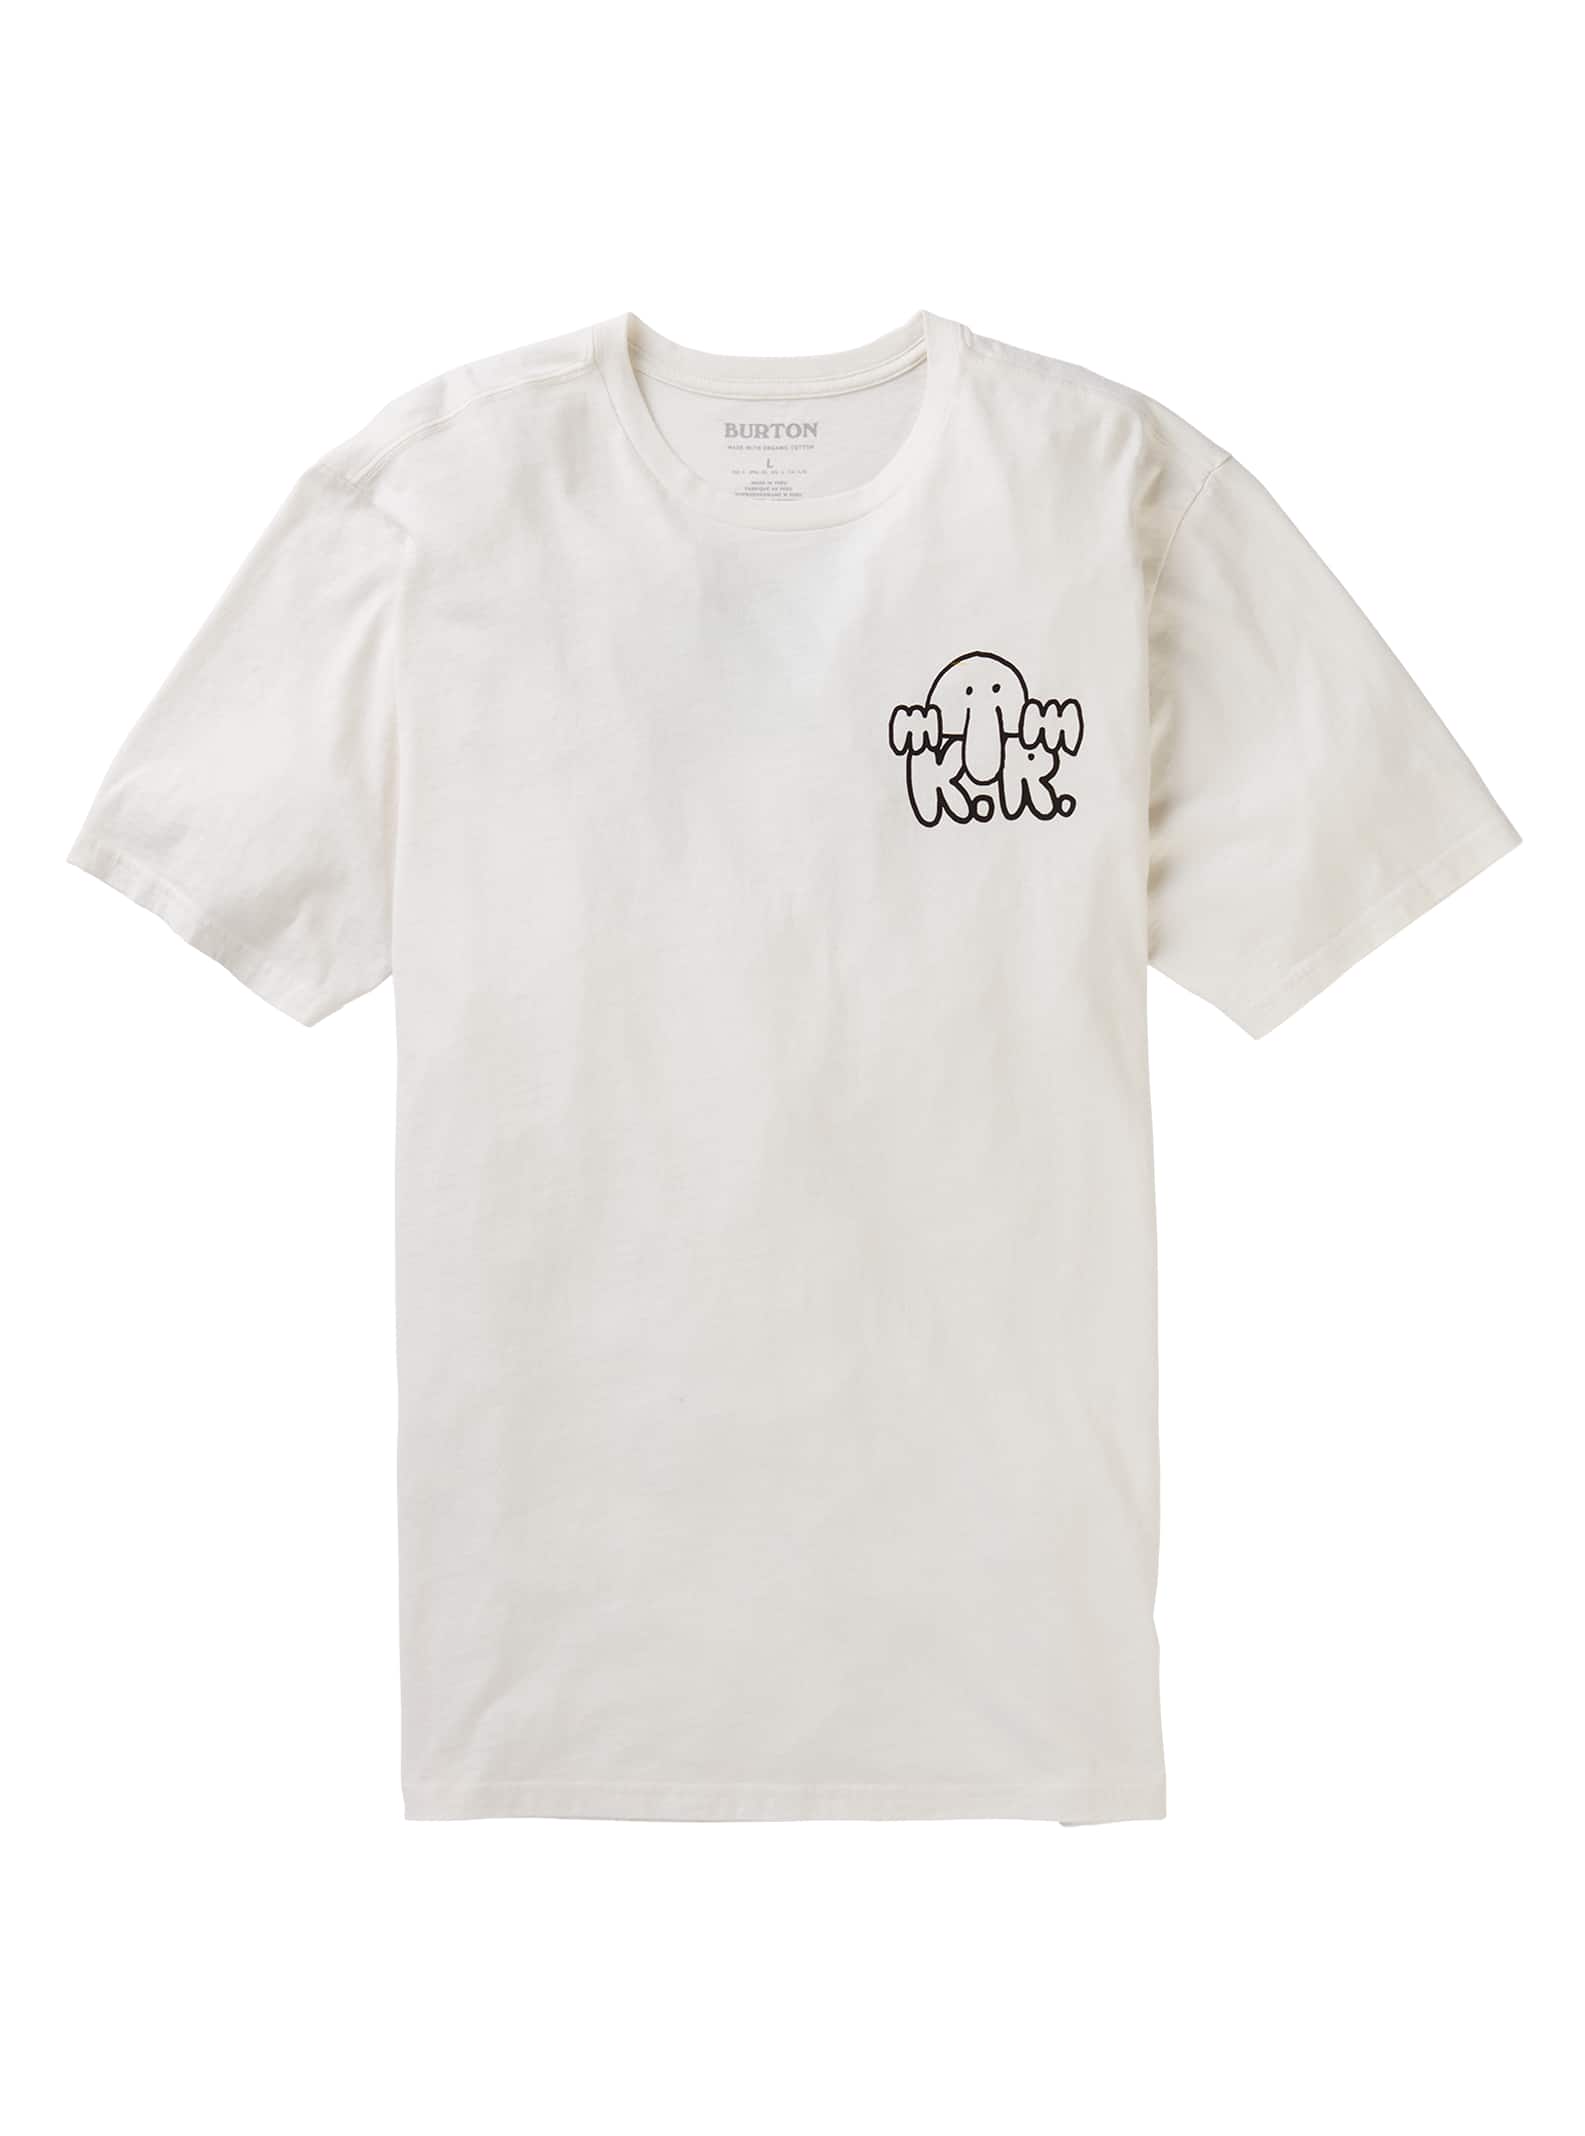 Burton - T-shirt manches courtes Kilroy homme, Stout White, XXS